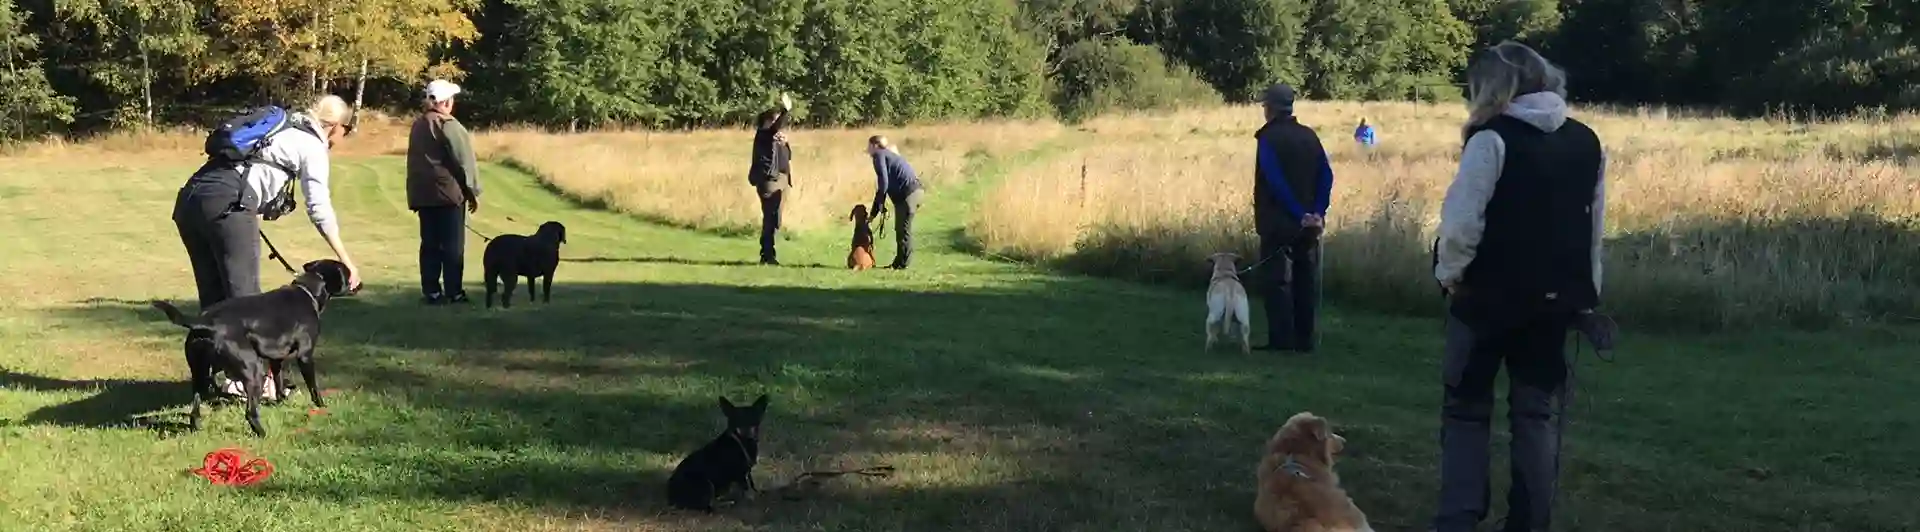 Ett gäng med hundägare som tränar jaktapportering.